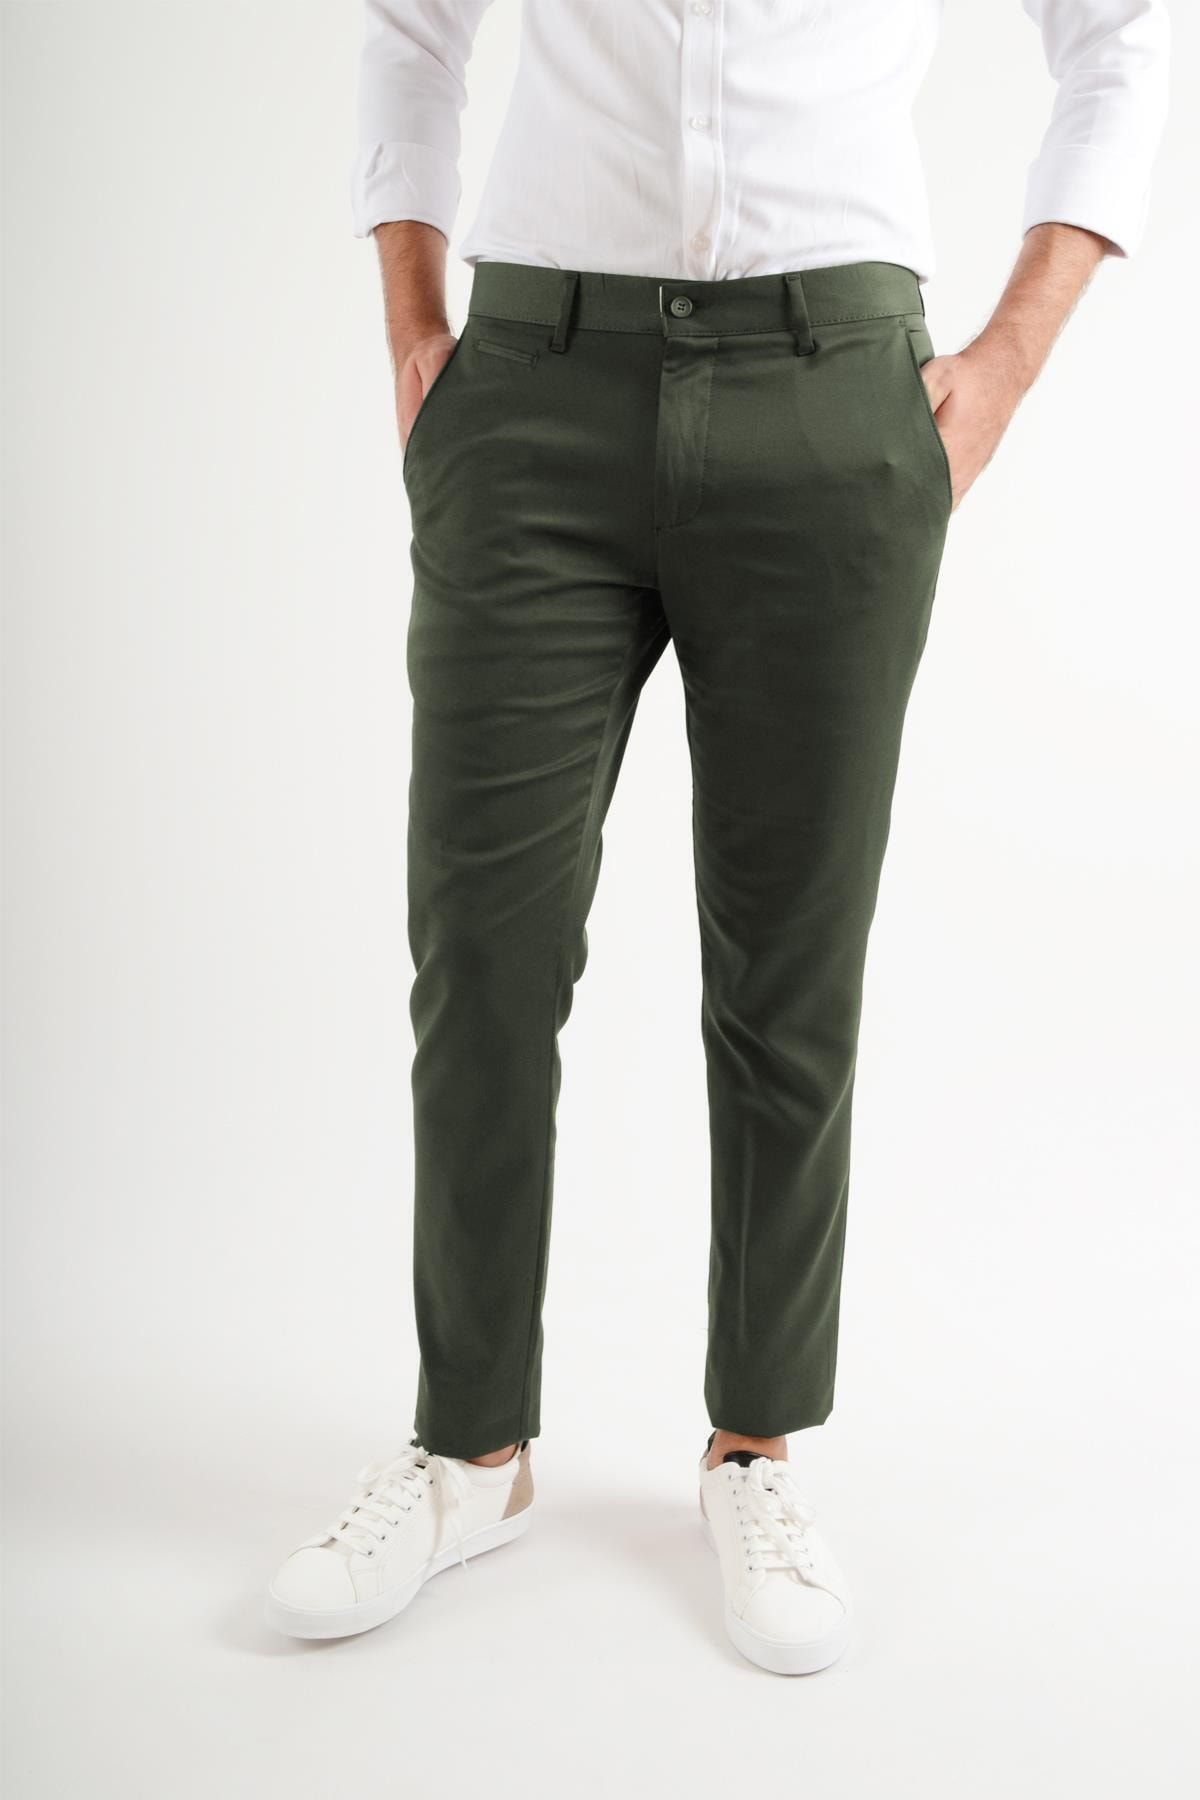 Luppo Club Günlük Kumaş Yeşil Erkek Pantolon Salacak